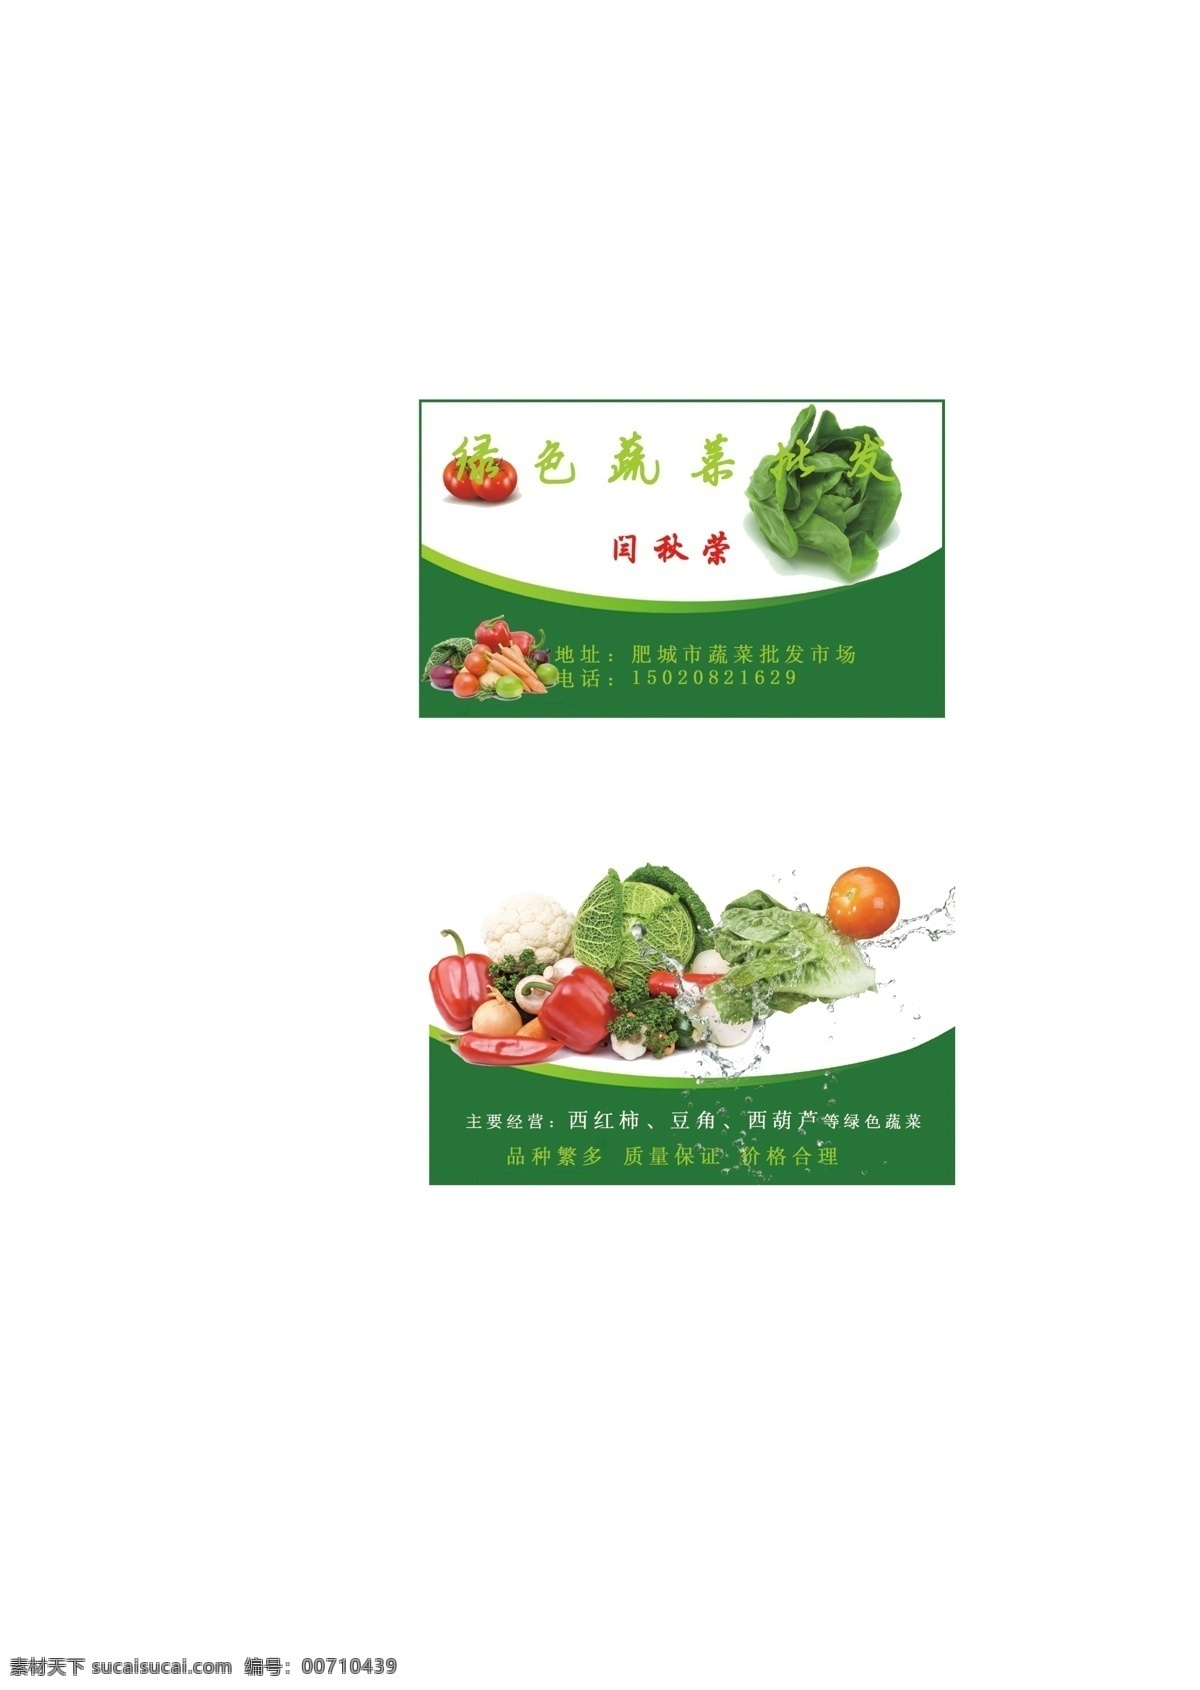 蔬菜批发名片 蔬菜批发市场 名片 绿色蔬菜 水滴 西红柿 名片卡片 广告设计模板 源文件